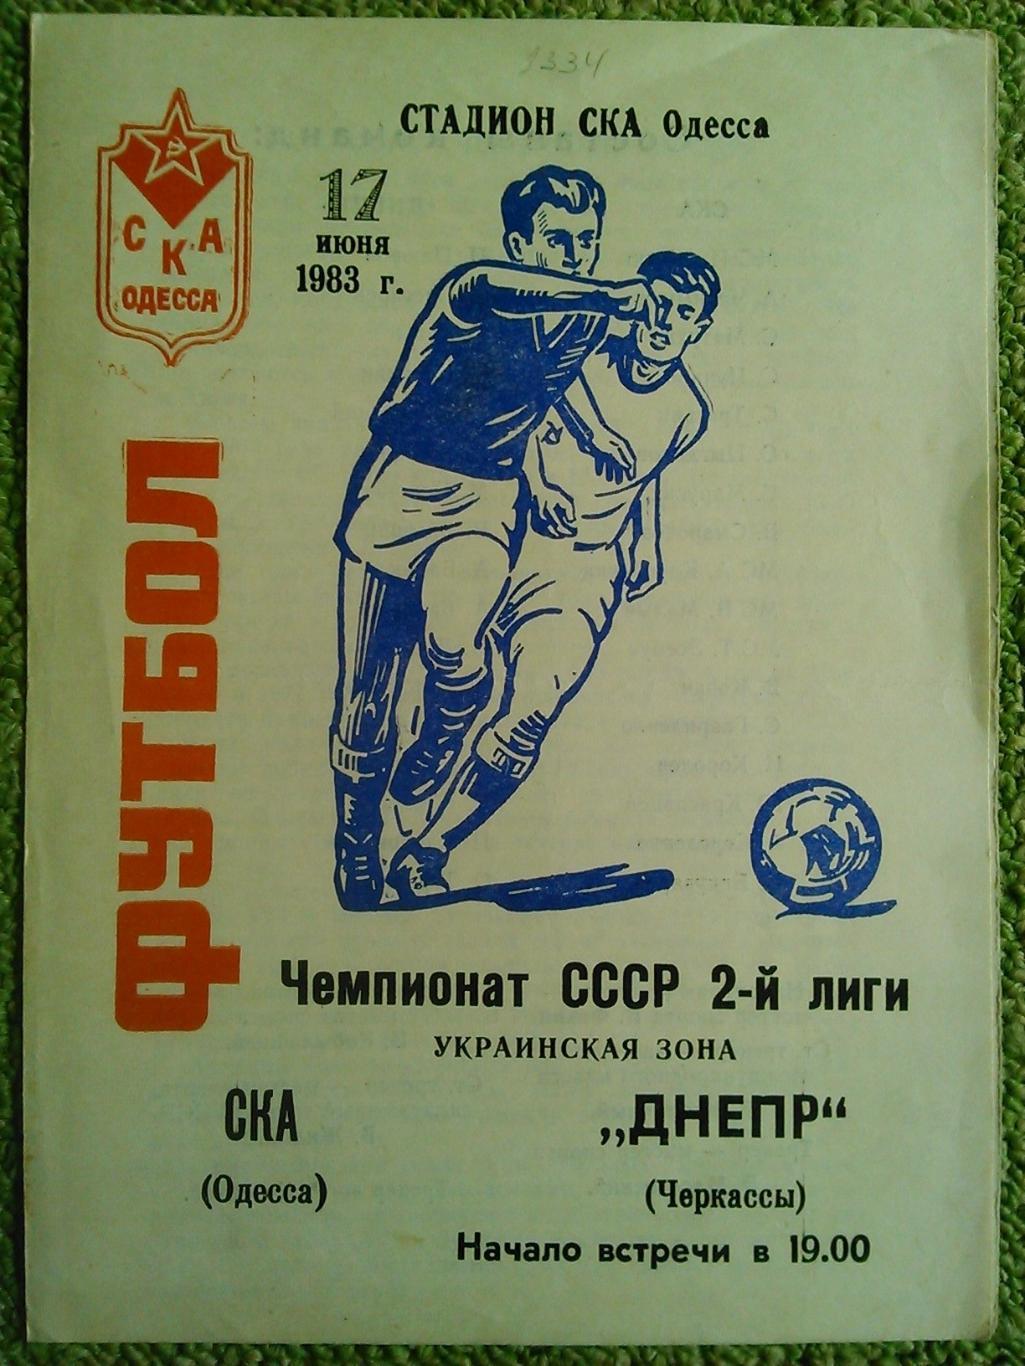 СКА (Одесса) - ДНЕПР Черкассы 17.06.1983. Оптом скидки до 45%!